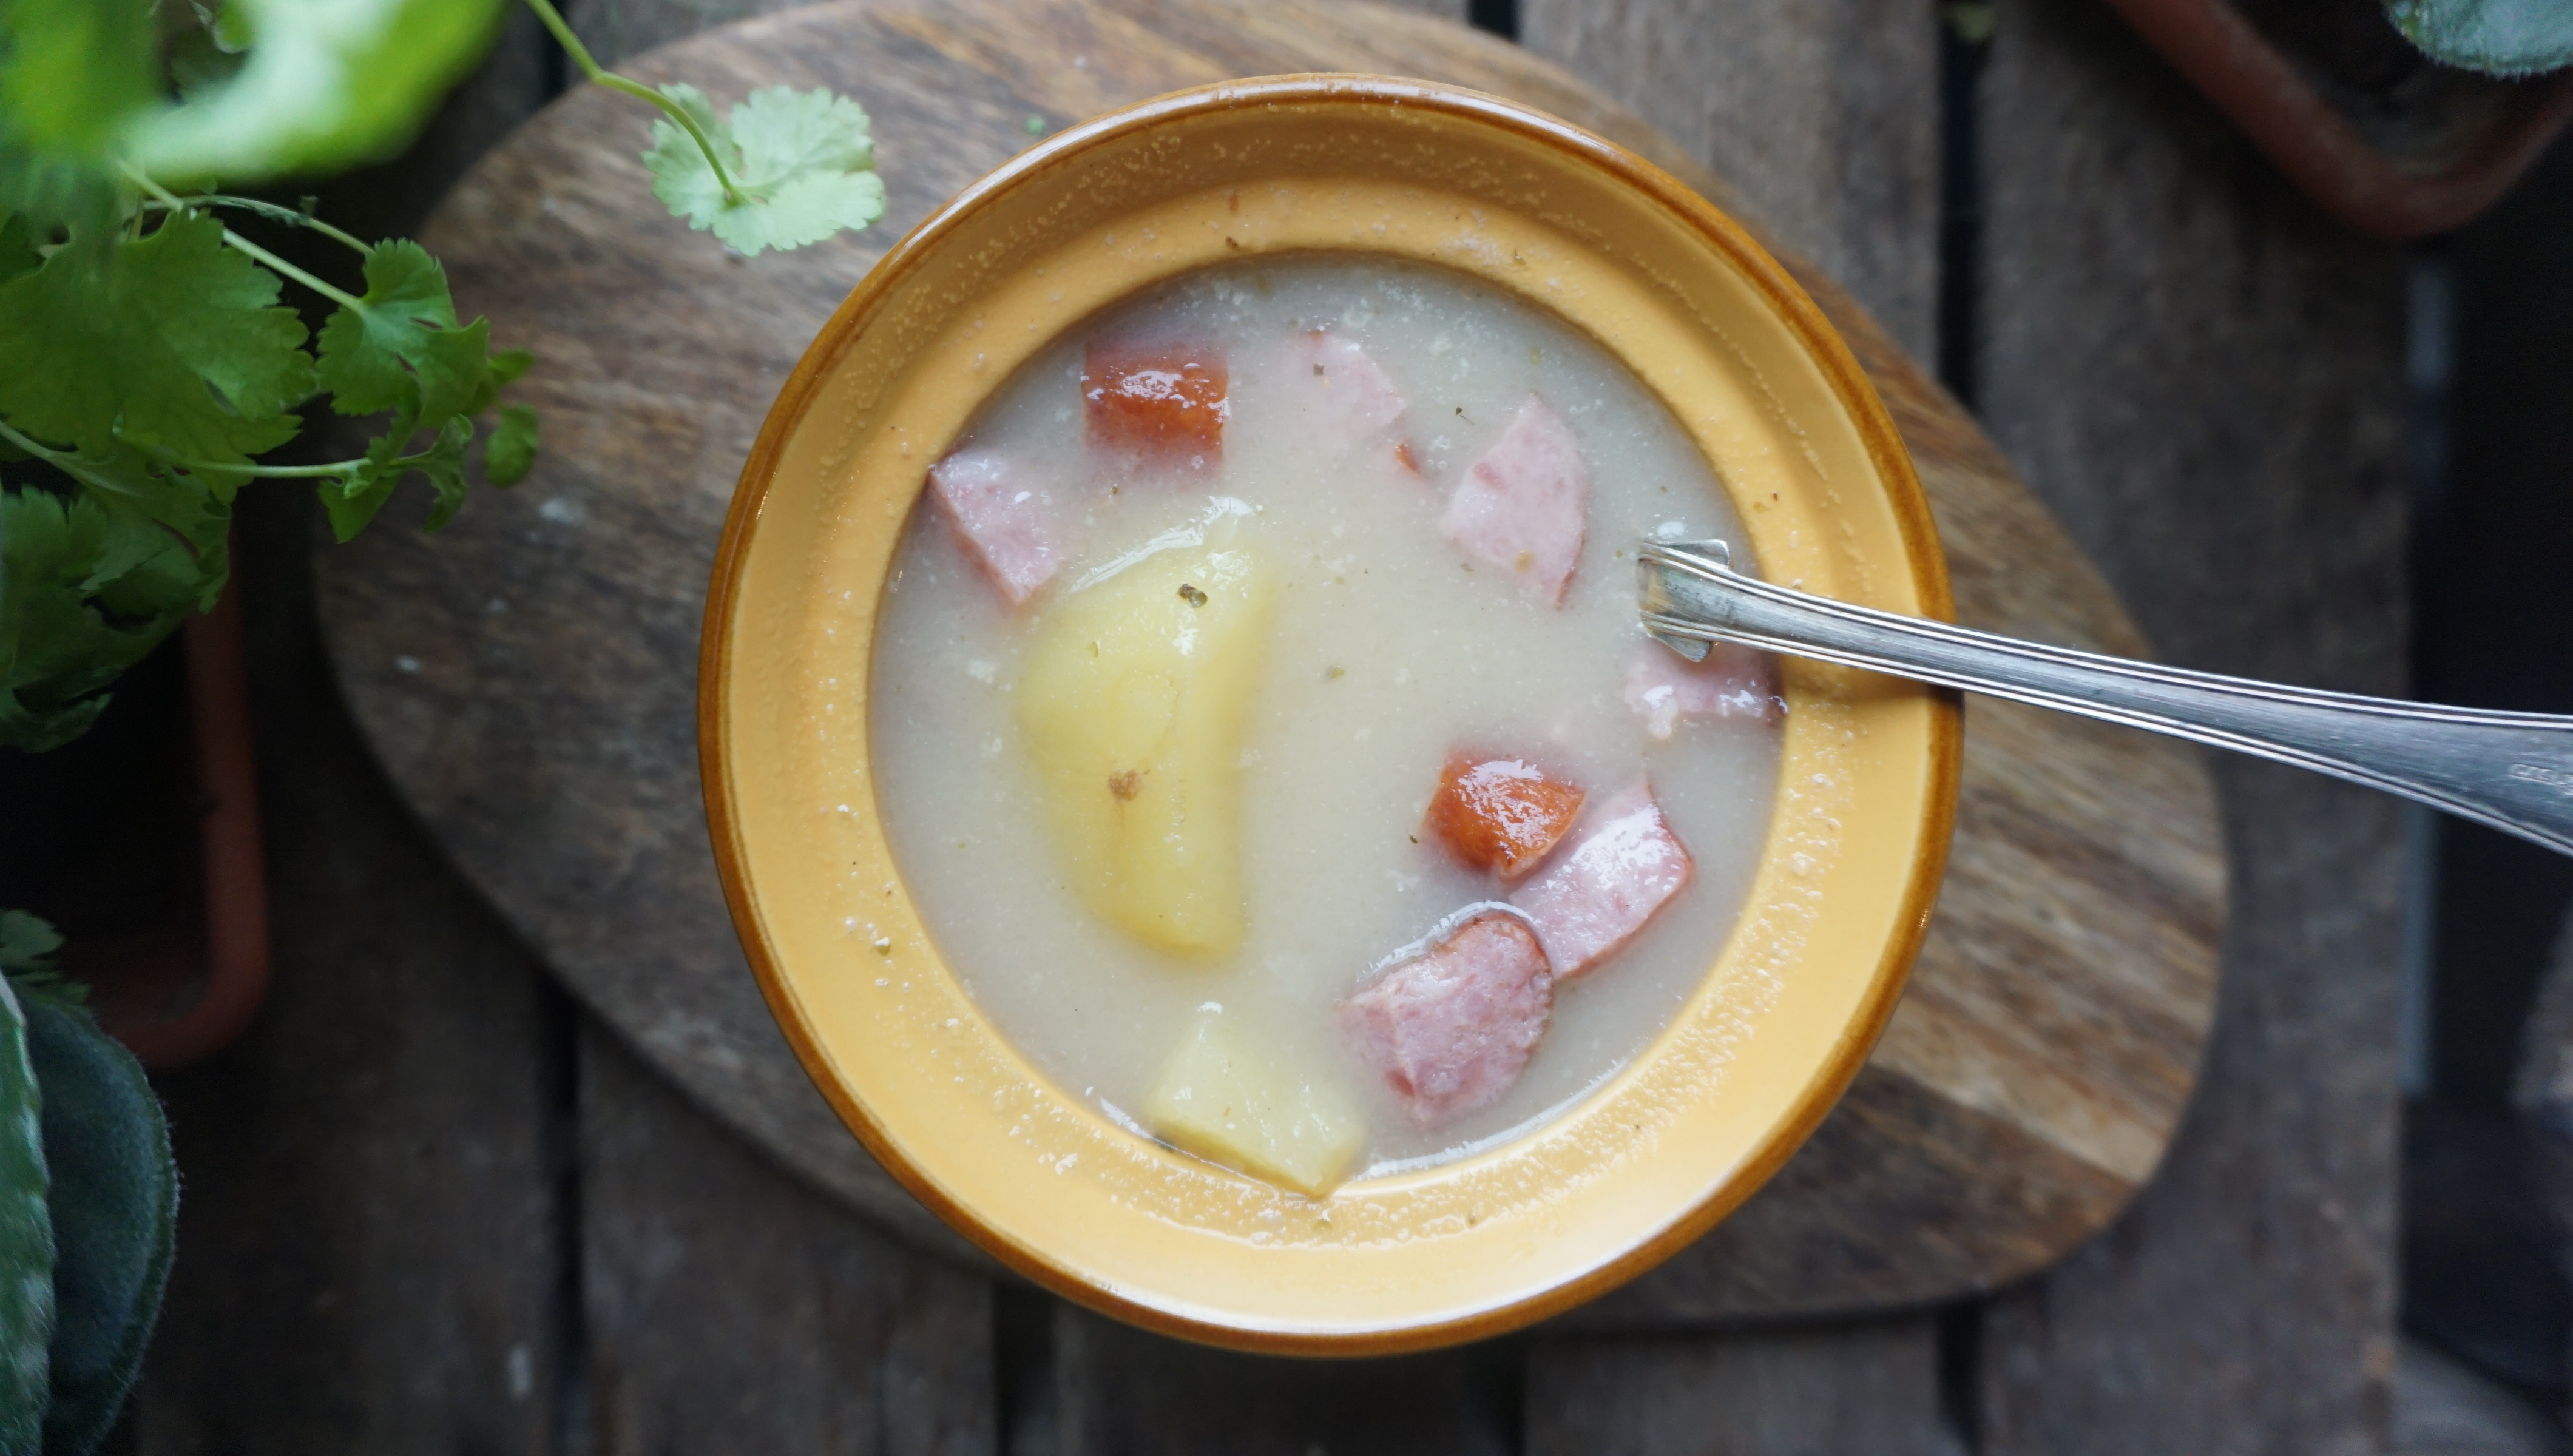 Żur, żurek, польский суп журек на закваске